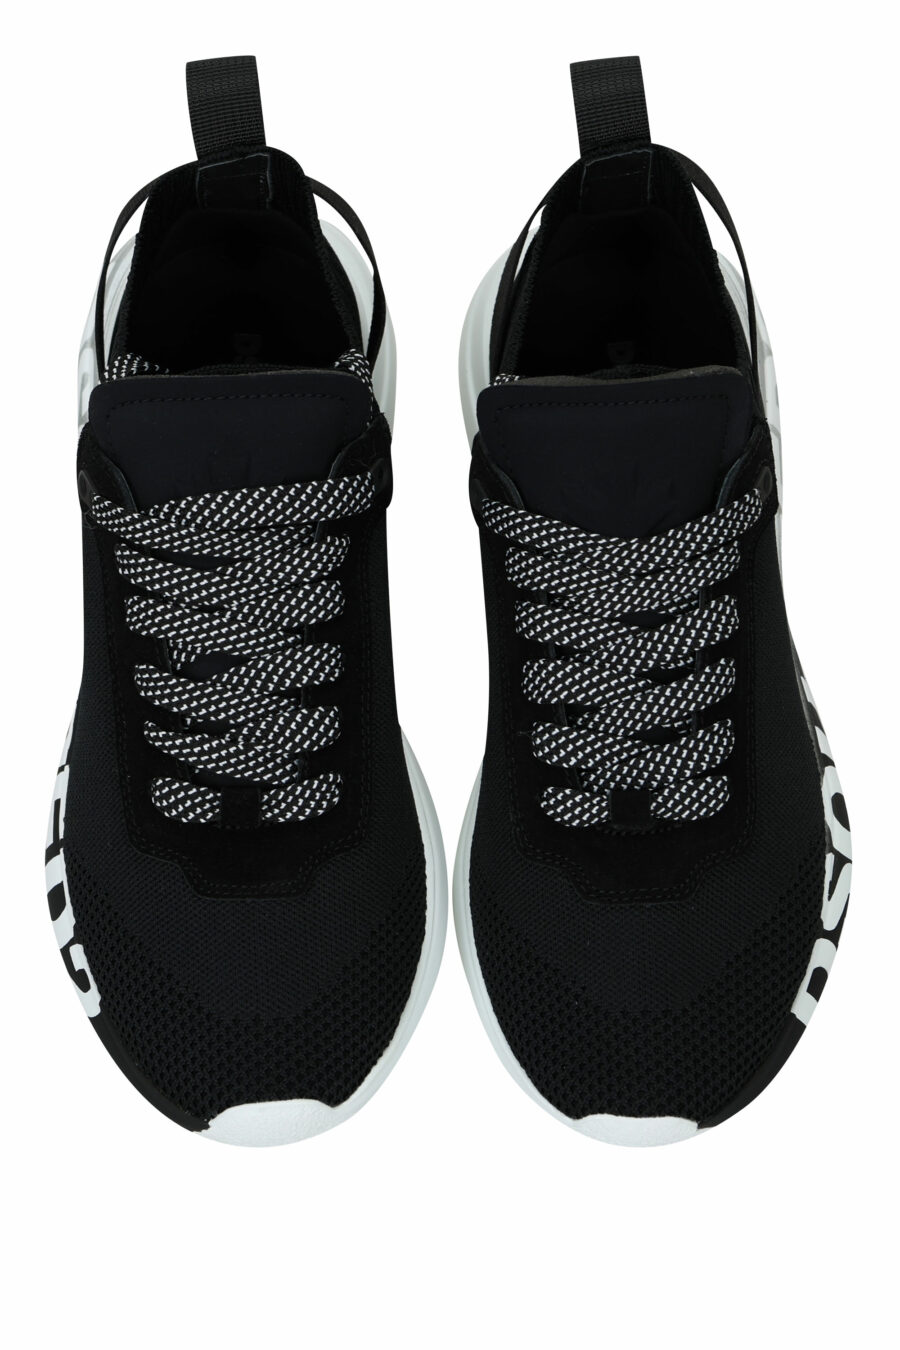 Zapatillas negras "fly" con logo negro en suela blanca - 8055777324769 4